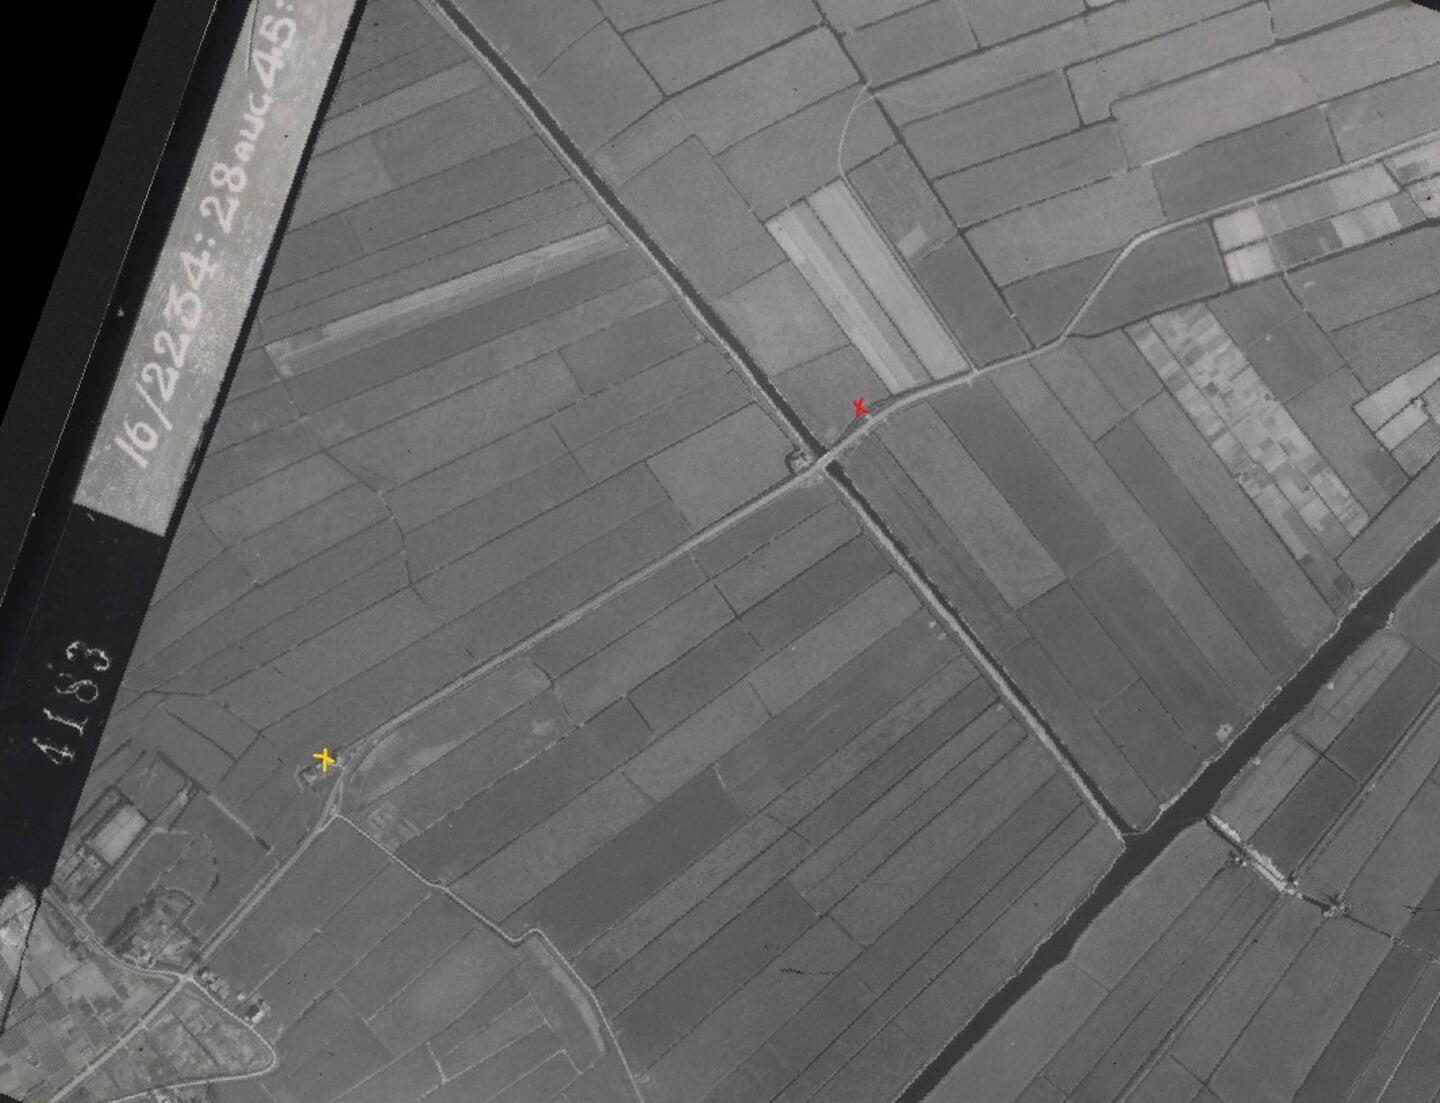 Luchtfoto van Leiderdorp uit augustus 1945 met een geel kruisje als aanduiding van het tolhek.